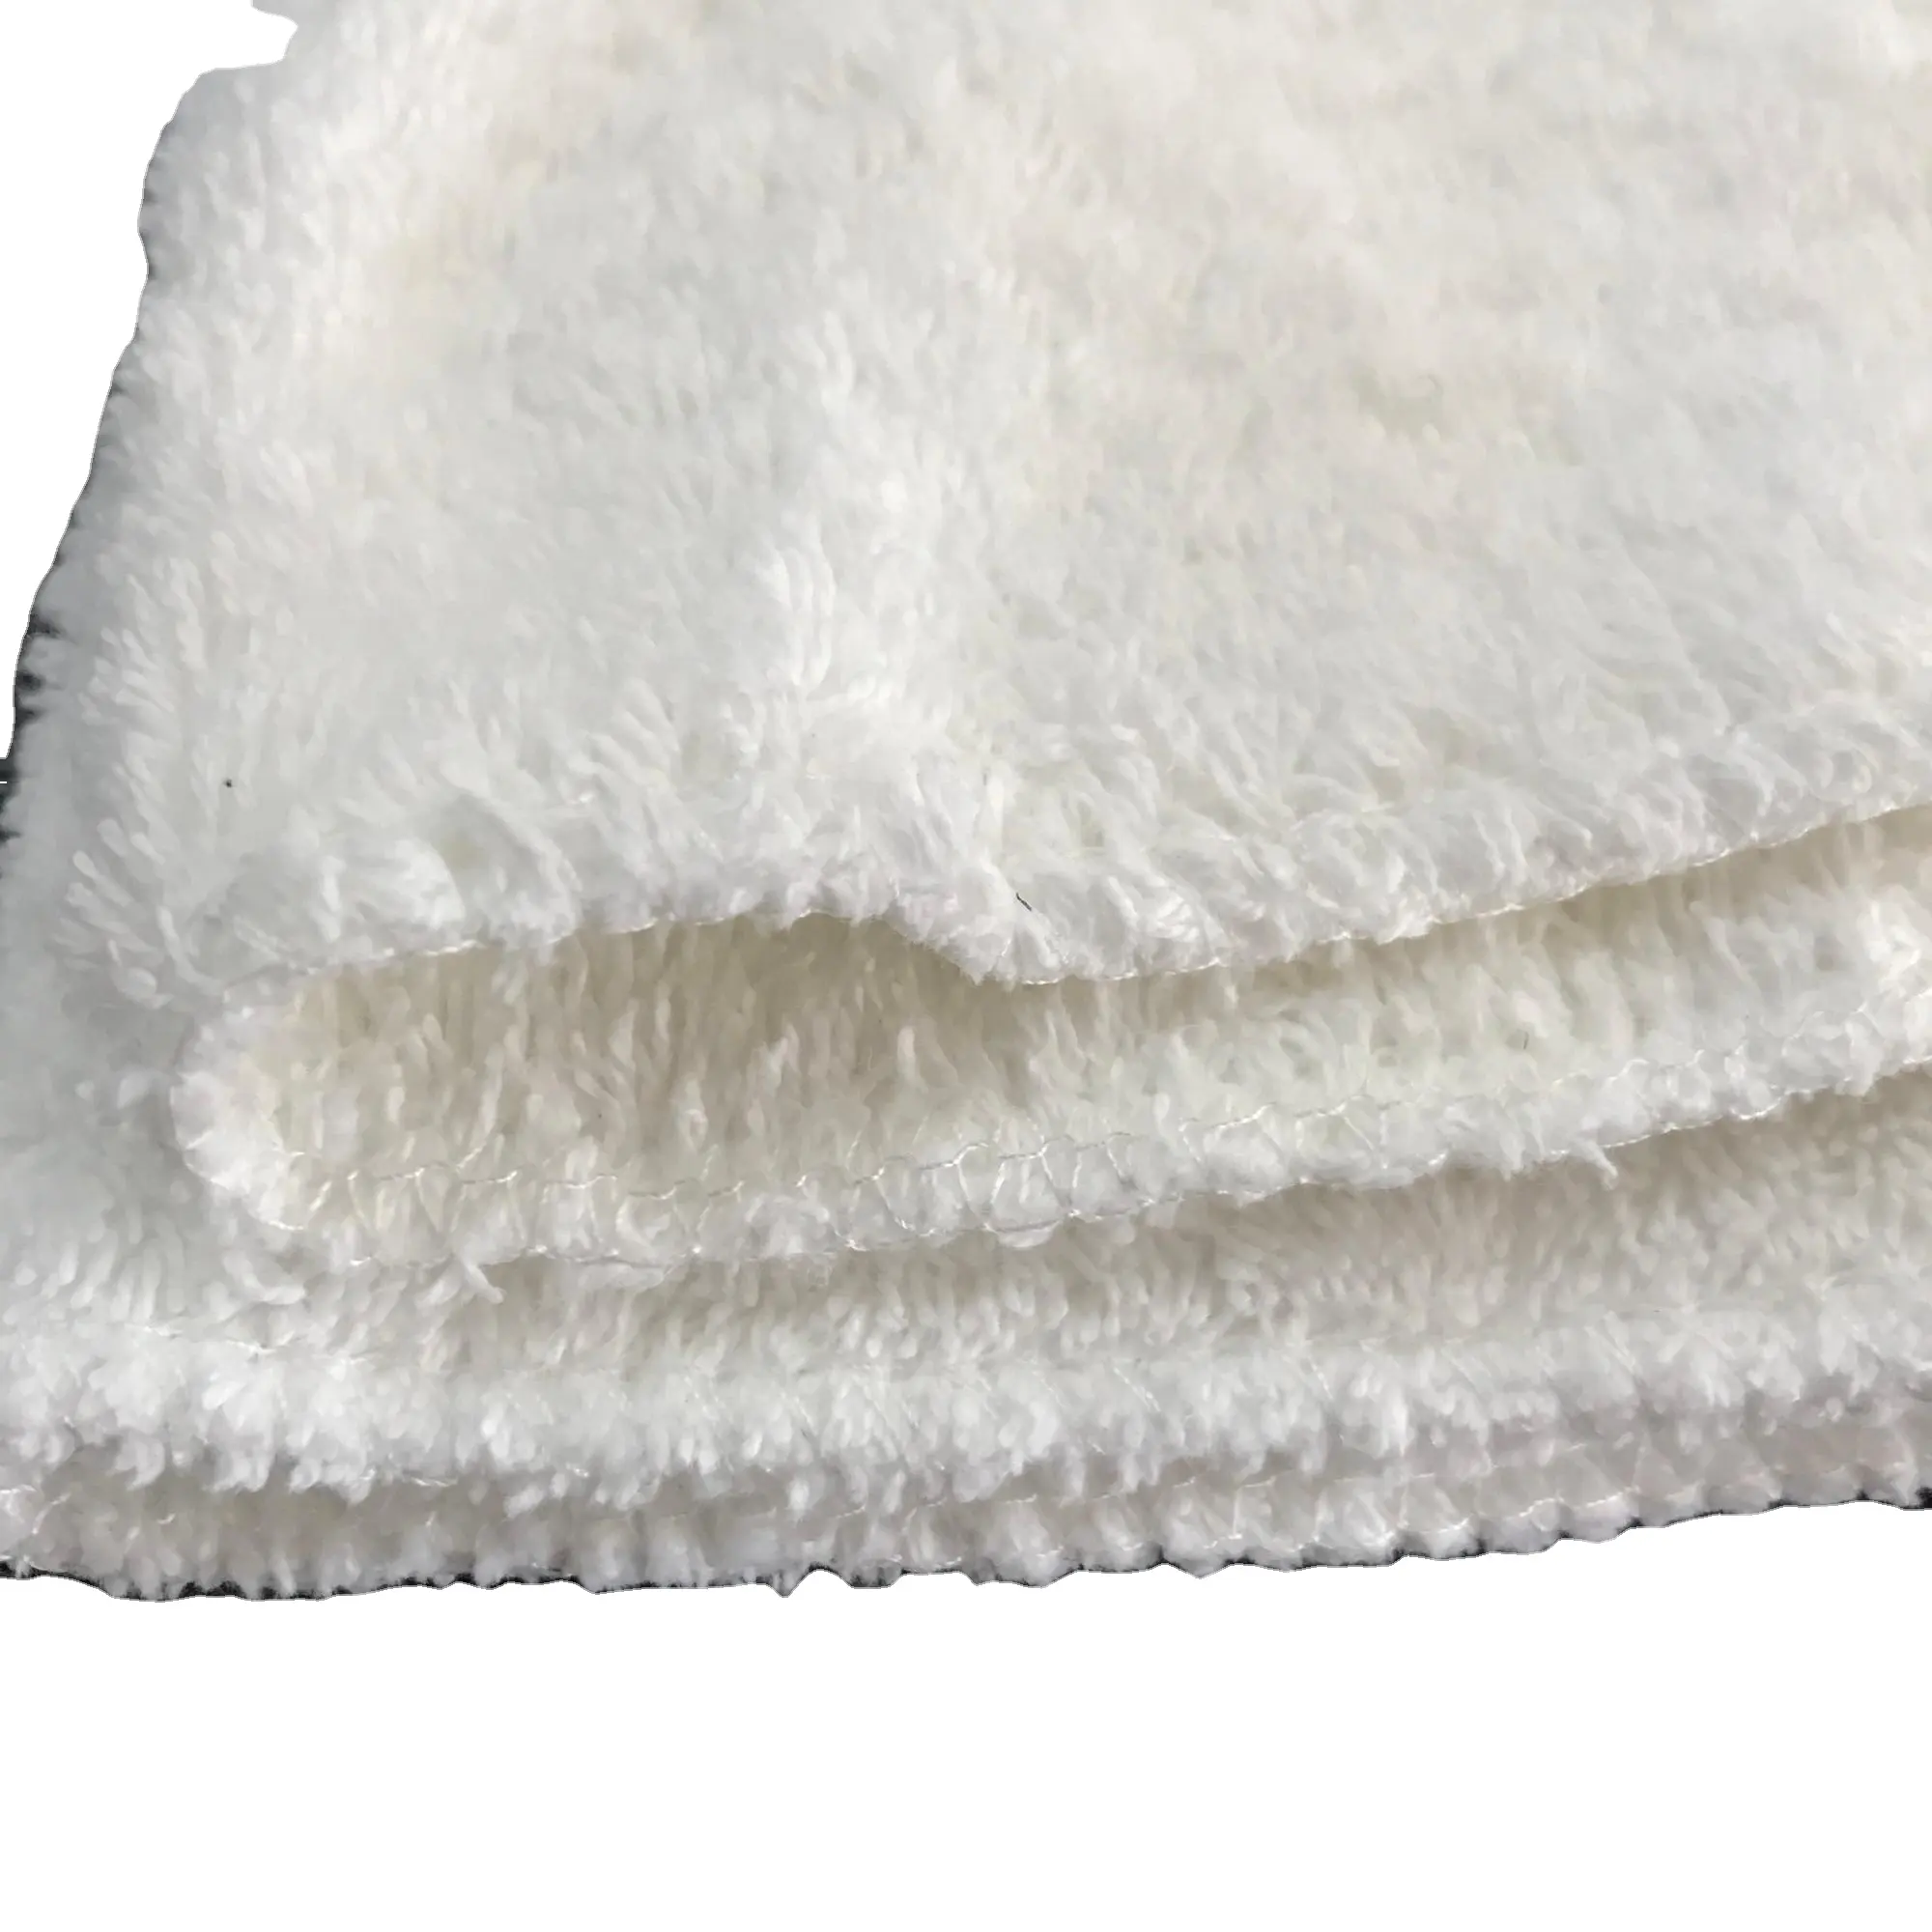 Trapos de limpieza Industrial, paño de limpieza de aceite, material suave usado, Trapos de toalla facial de algodón blanco